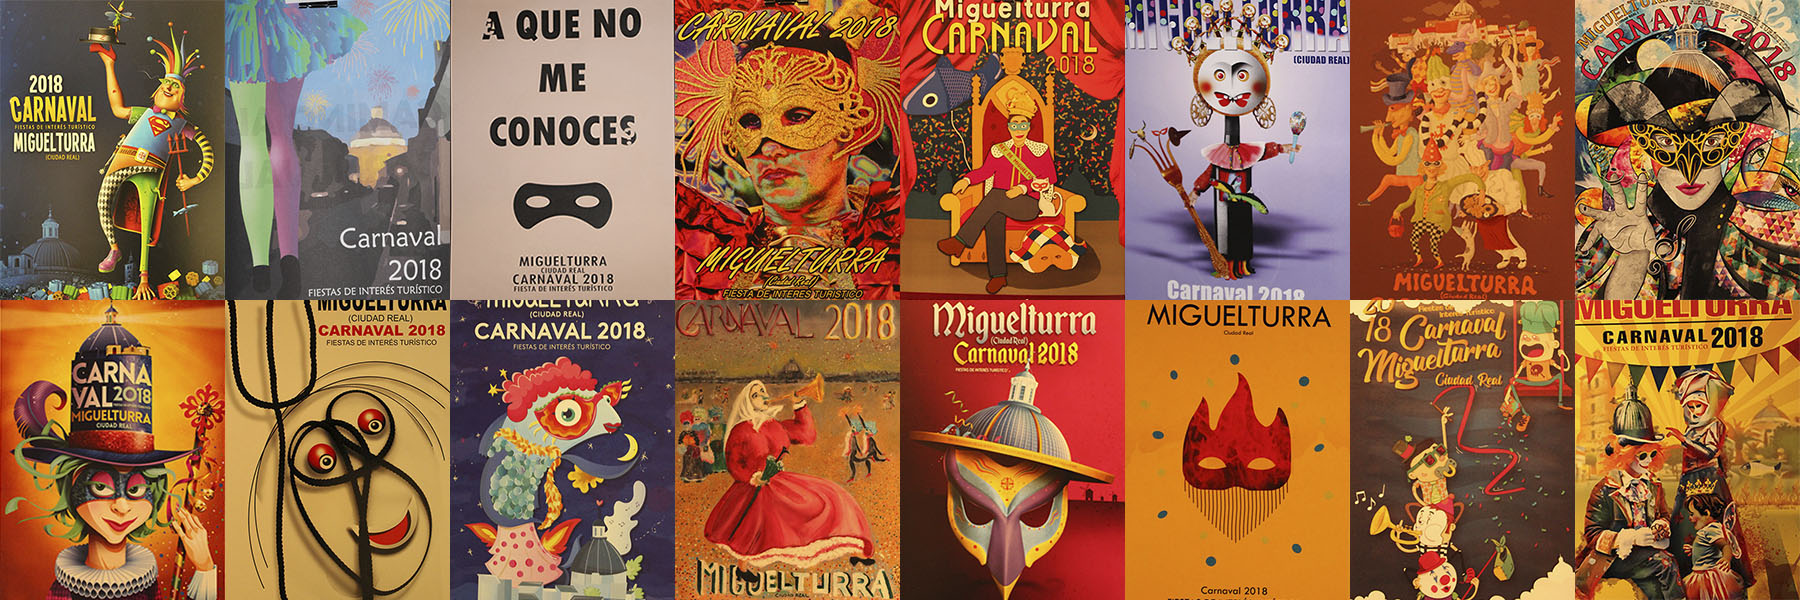 carnaval-miguelturra-concurso-cartel-anunciador-2018